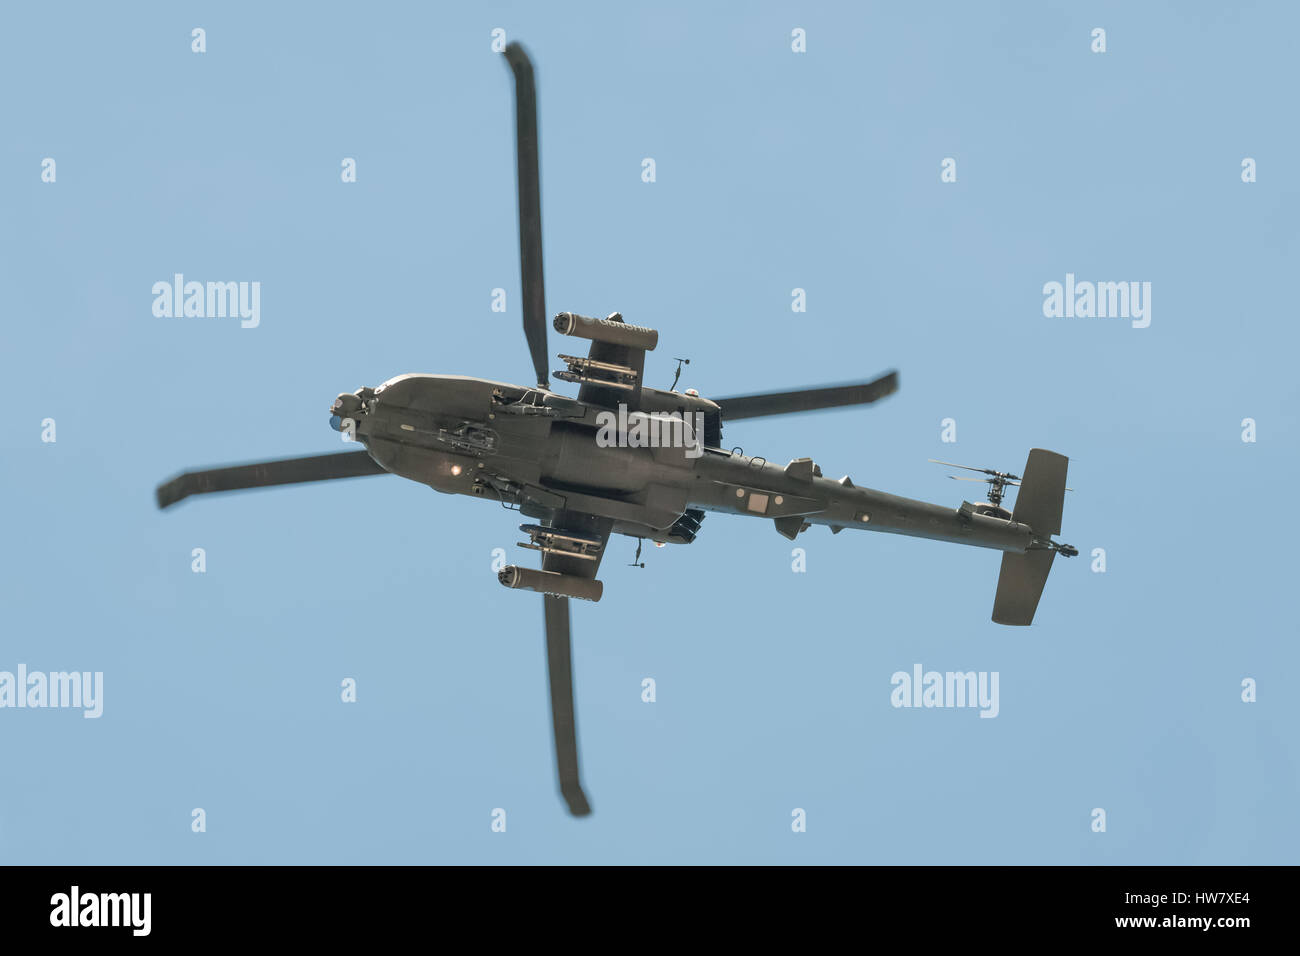 Unterseite einer Boeing AH-64 Apache Kampfhubschrauber, die Ankunft in Farnborough, England in einem klaren blauen Himmel. Stockfoto